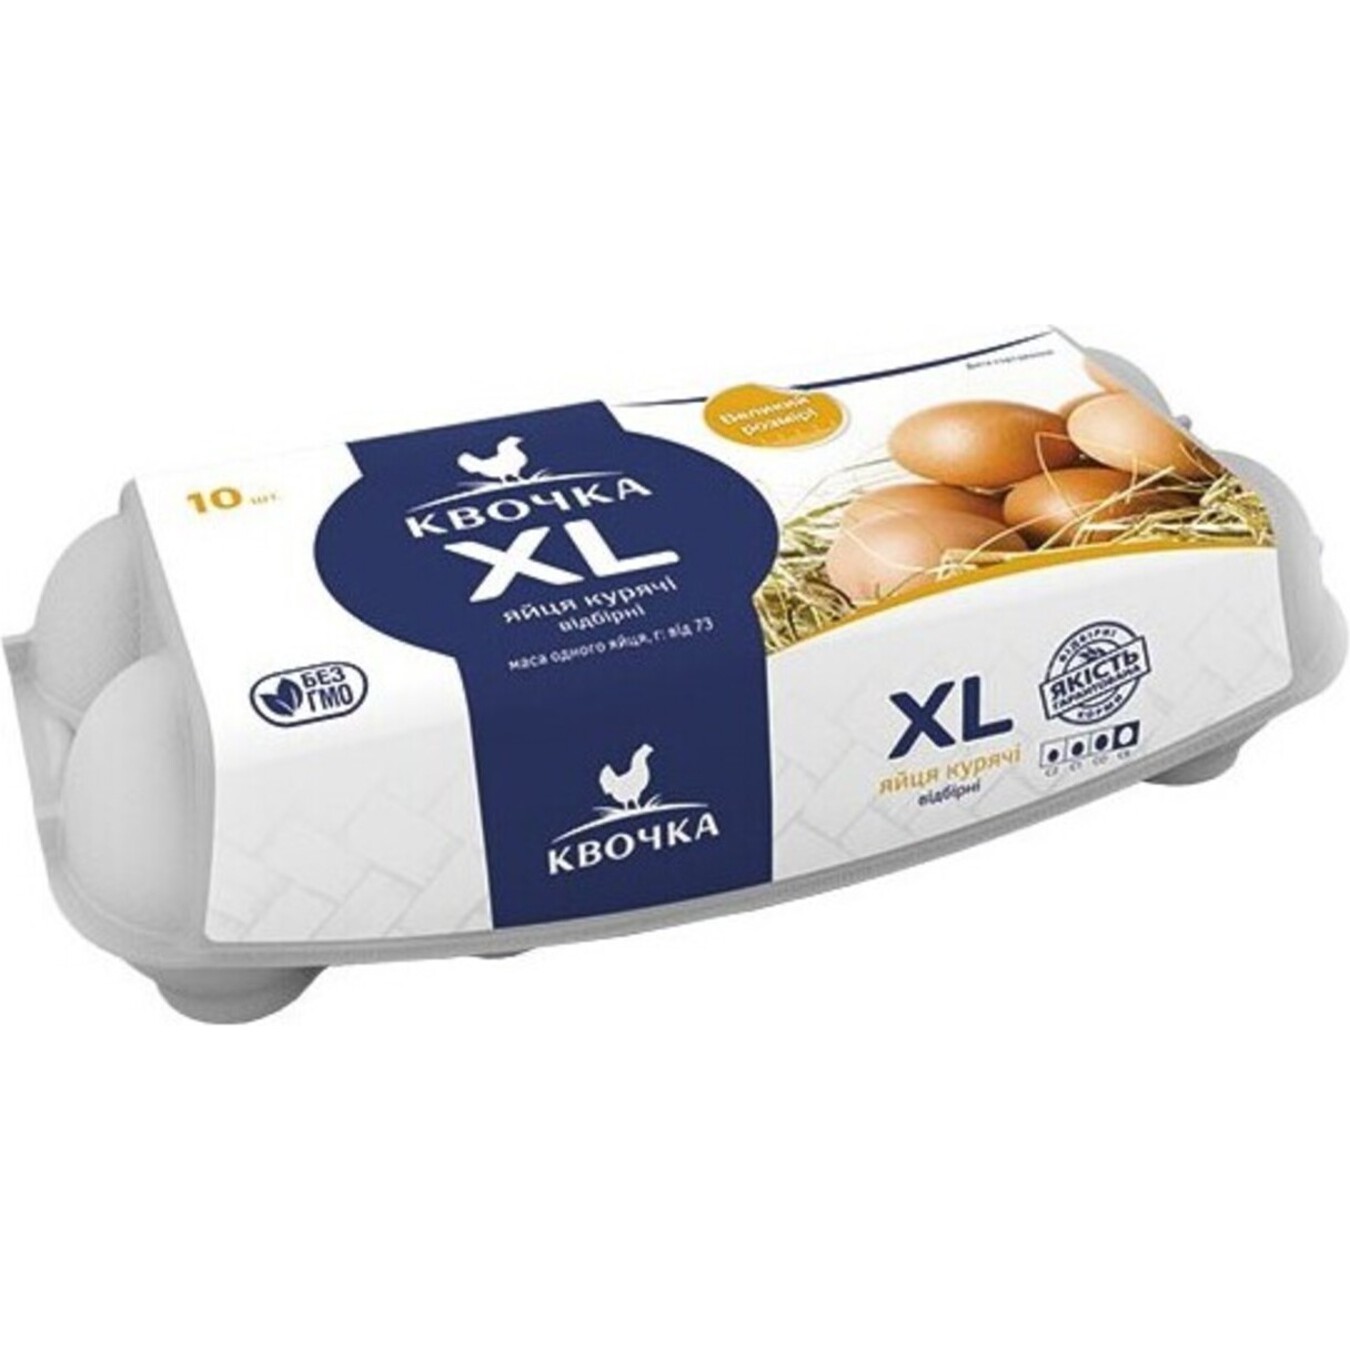 Kvochka XL Chicken Eggs C0 10pcs